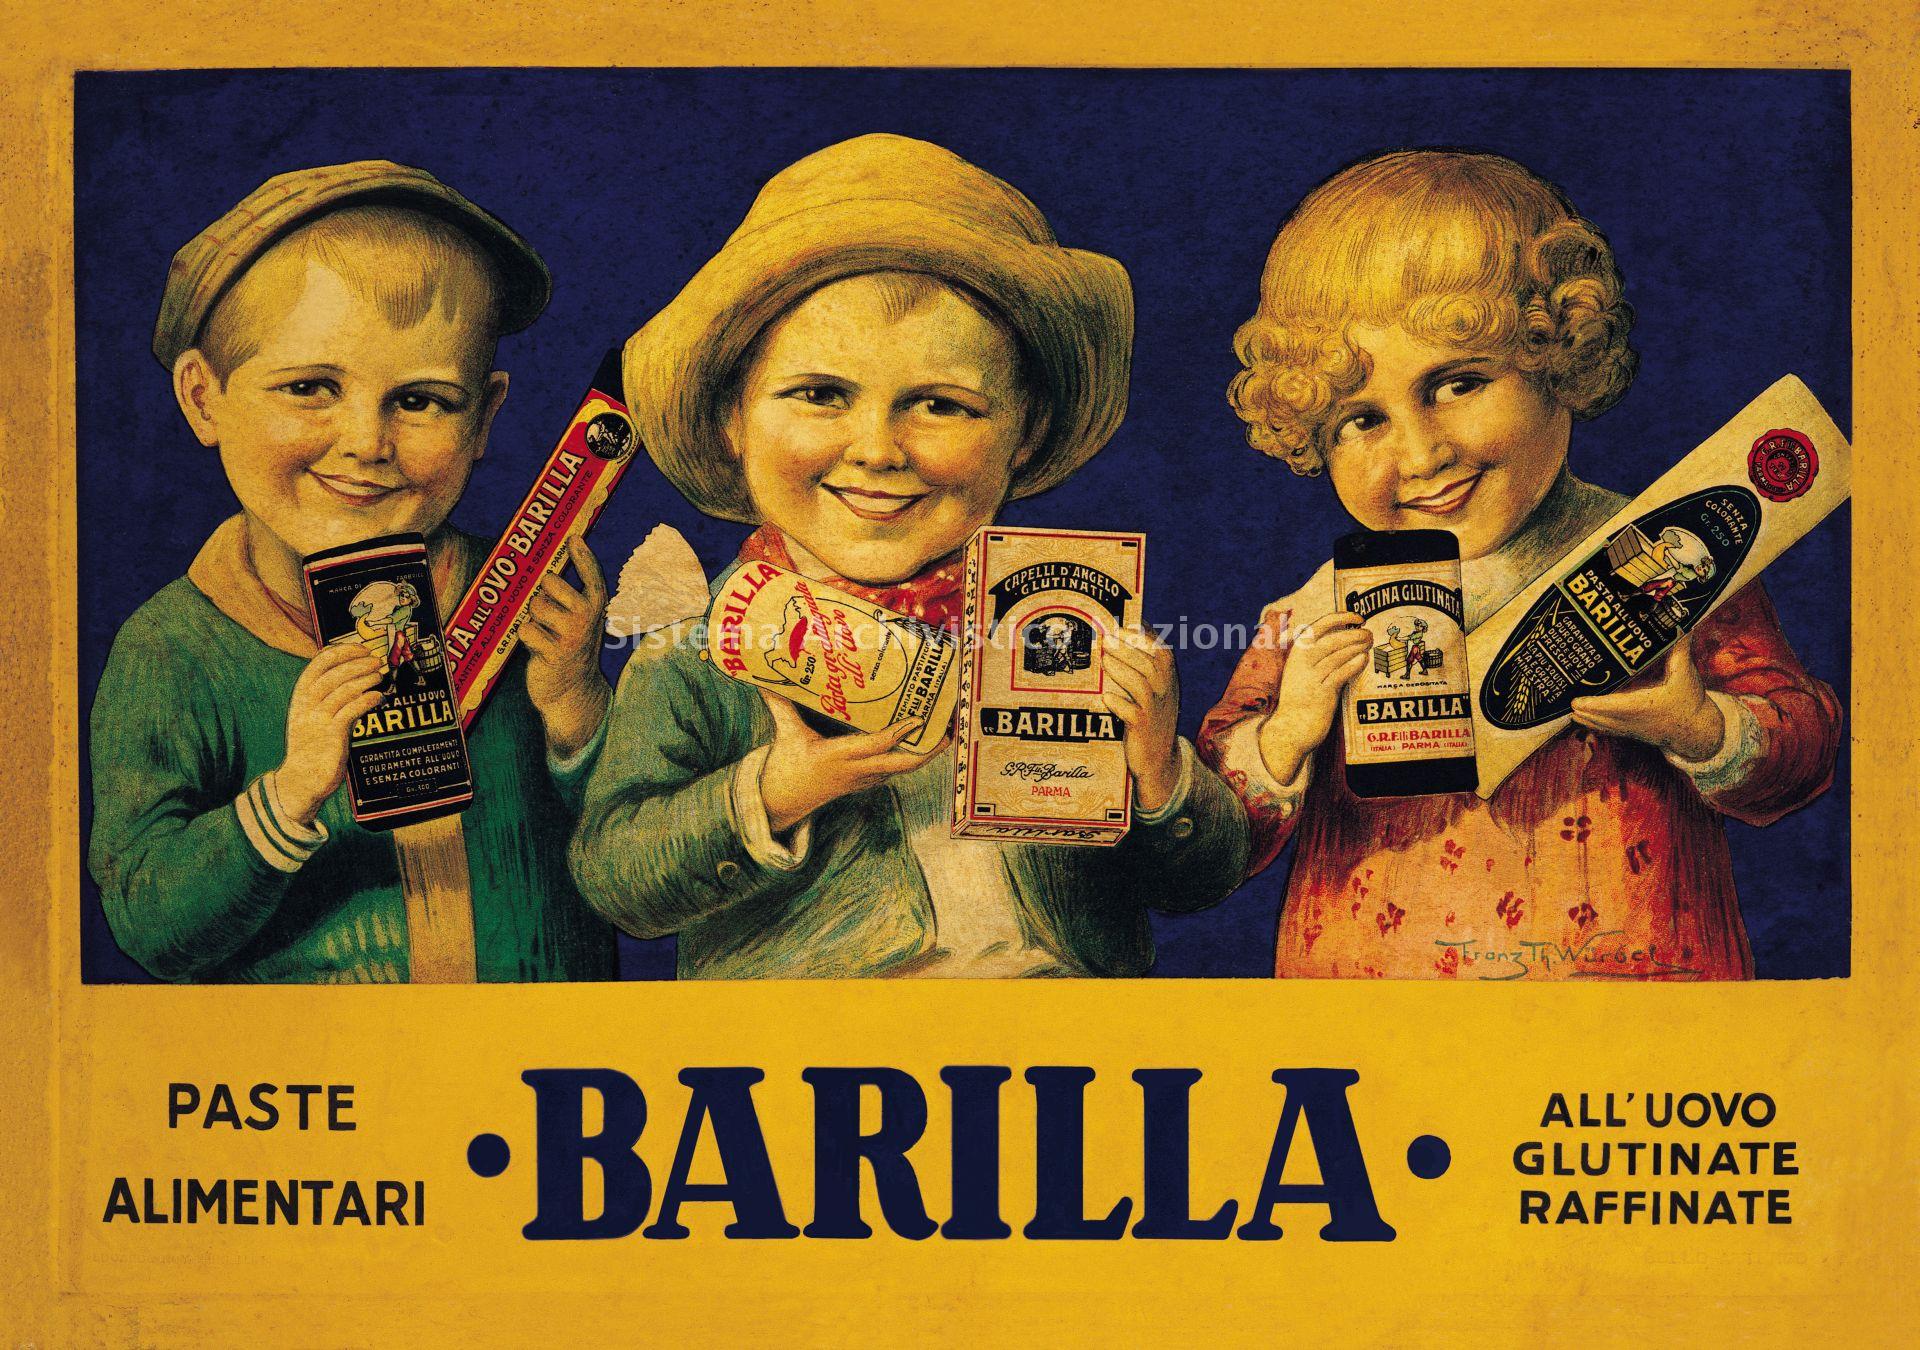   Il cartello pubblicitario da negozio di Franz Th. Wurgel, 1926 (Archivio storico Barilla).
